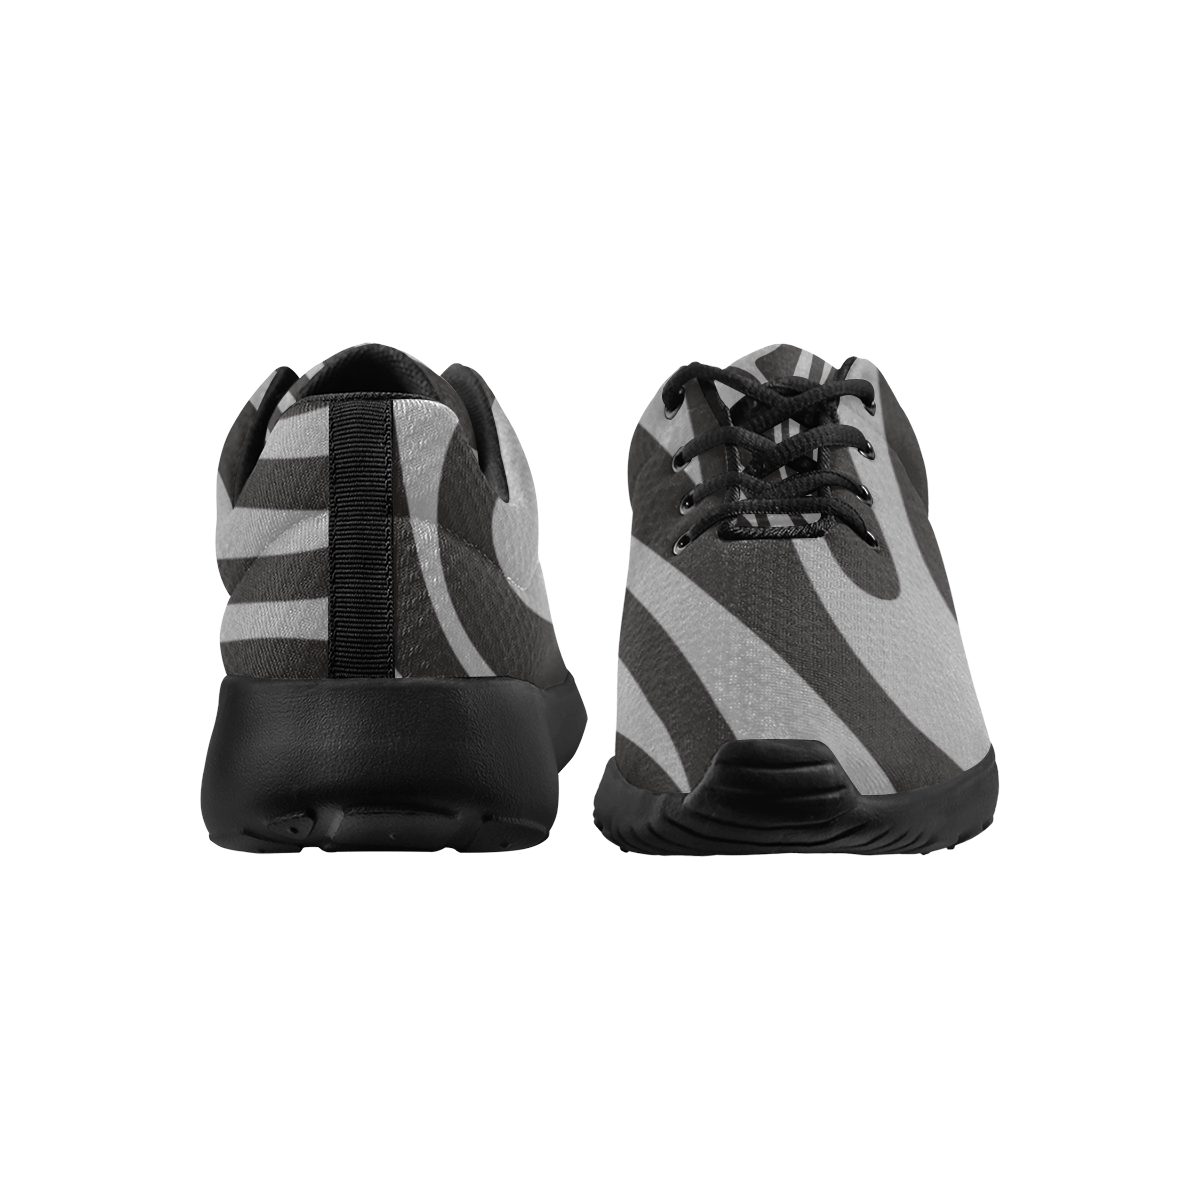 deportivas de hombre en gris y negro Men's Athletic Shoes (Model 0200)